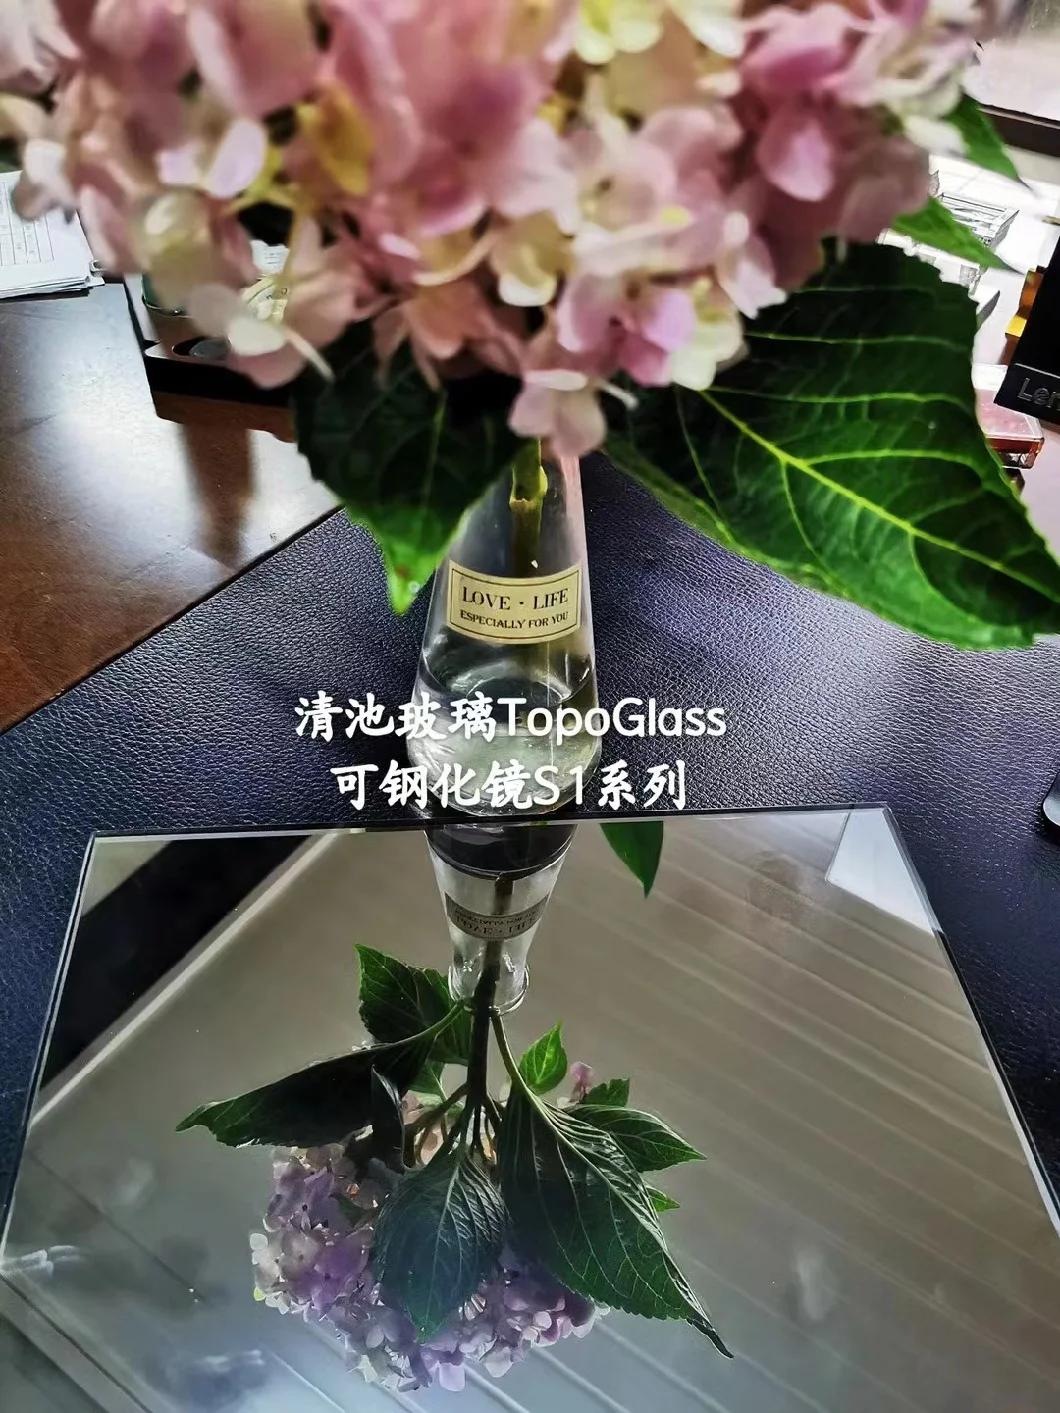 Guangzhou 2mm 3mm 4mm 5mm 6mm 8mm 10mm 12mm Double Side Decorative Mirror Sheet Glass (M-D)